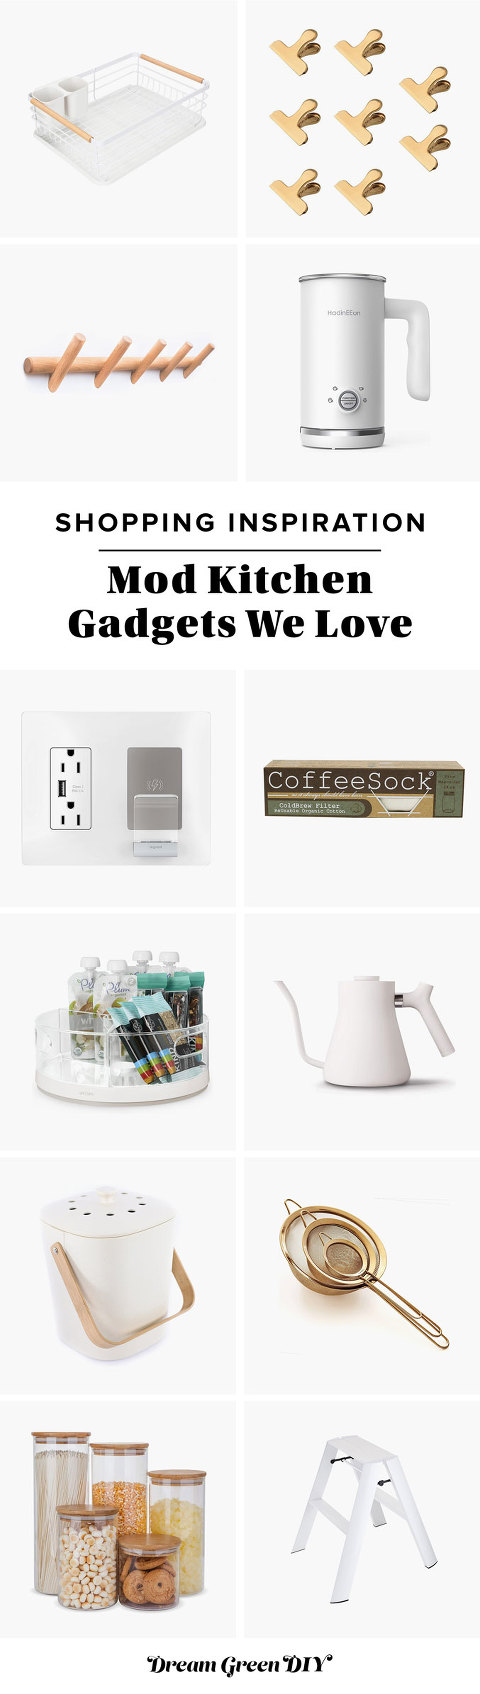 Mod Kitchen Gadgets We Love